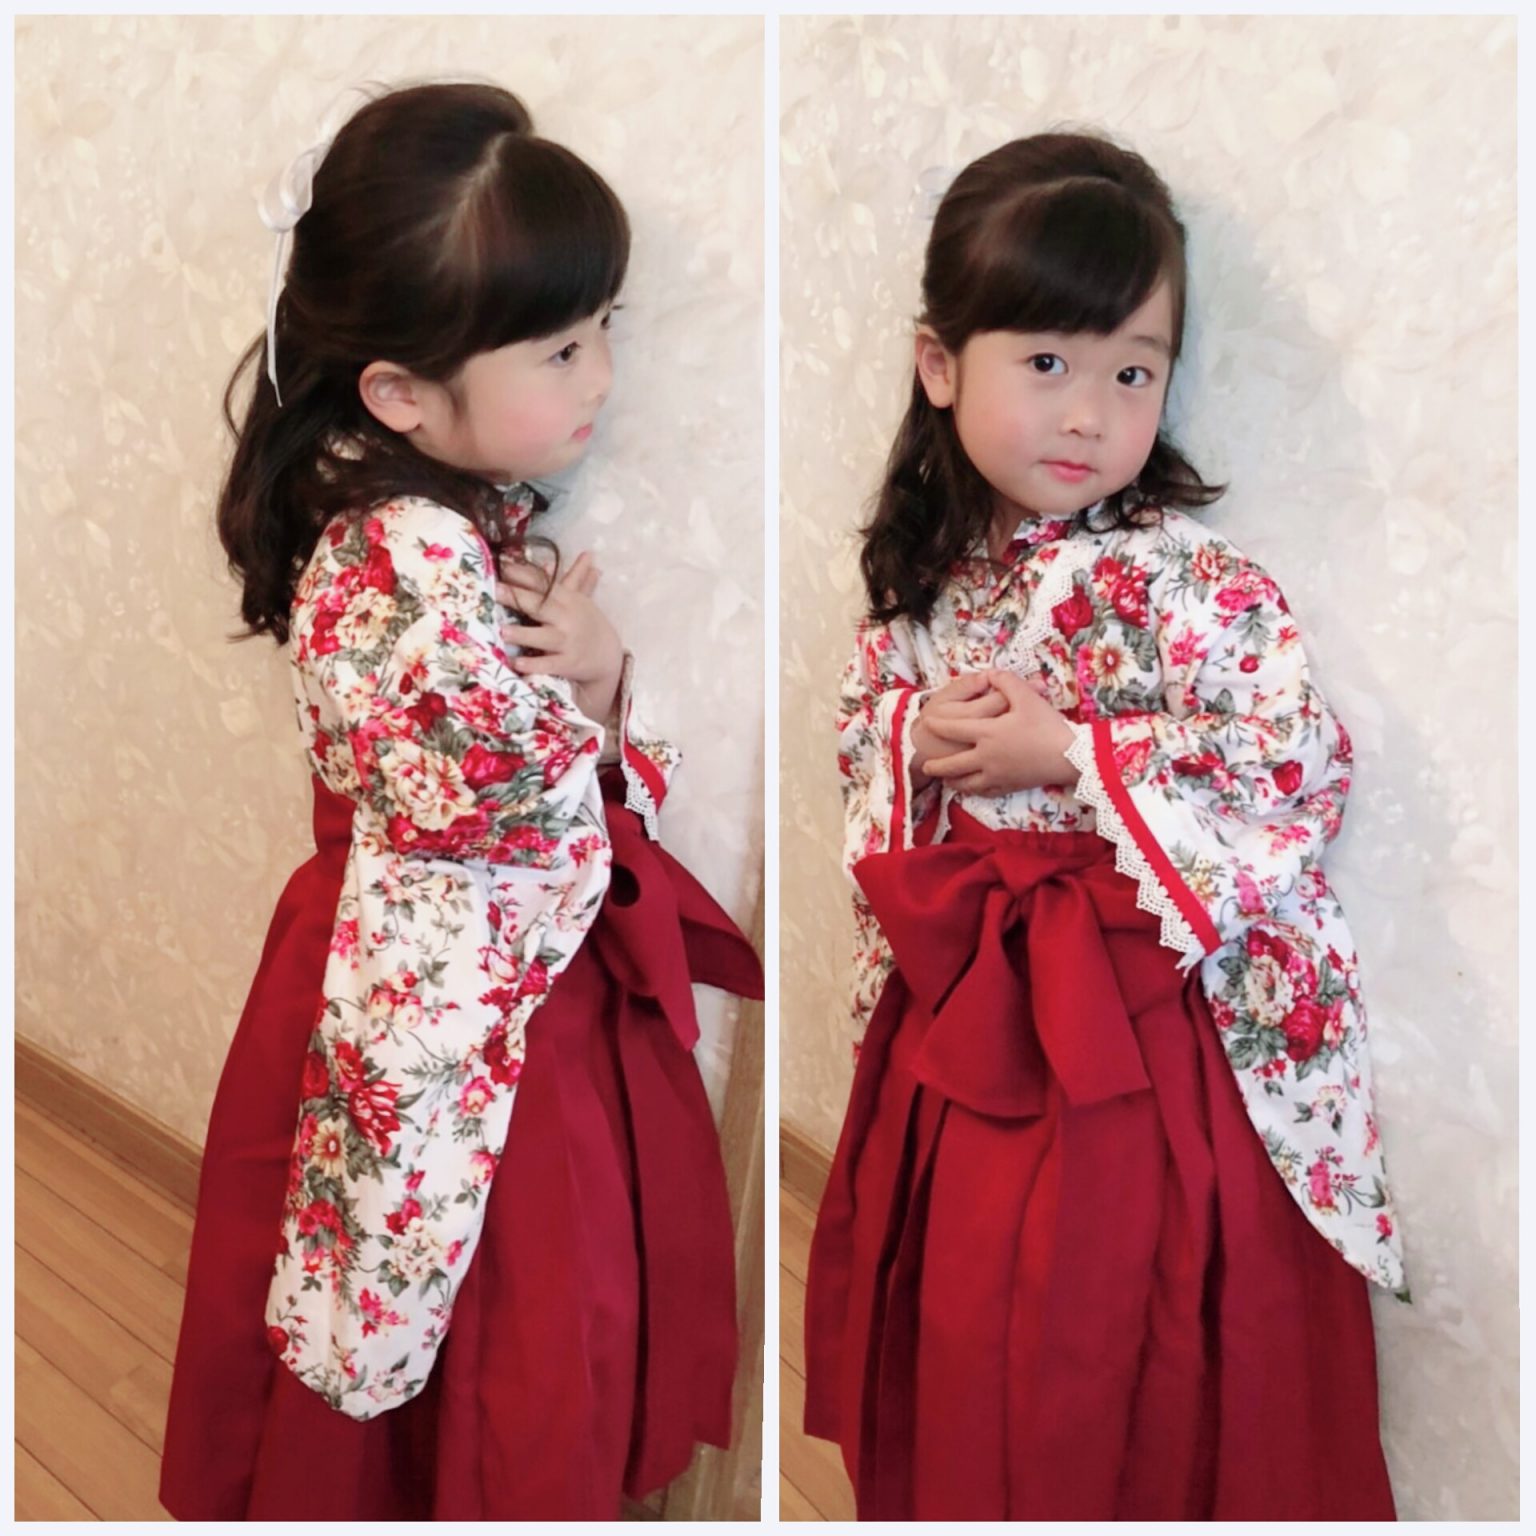 卒園記念に可愛い髪型と袴ドレスで写真が撮れます。